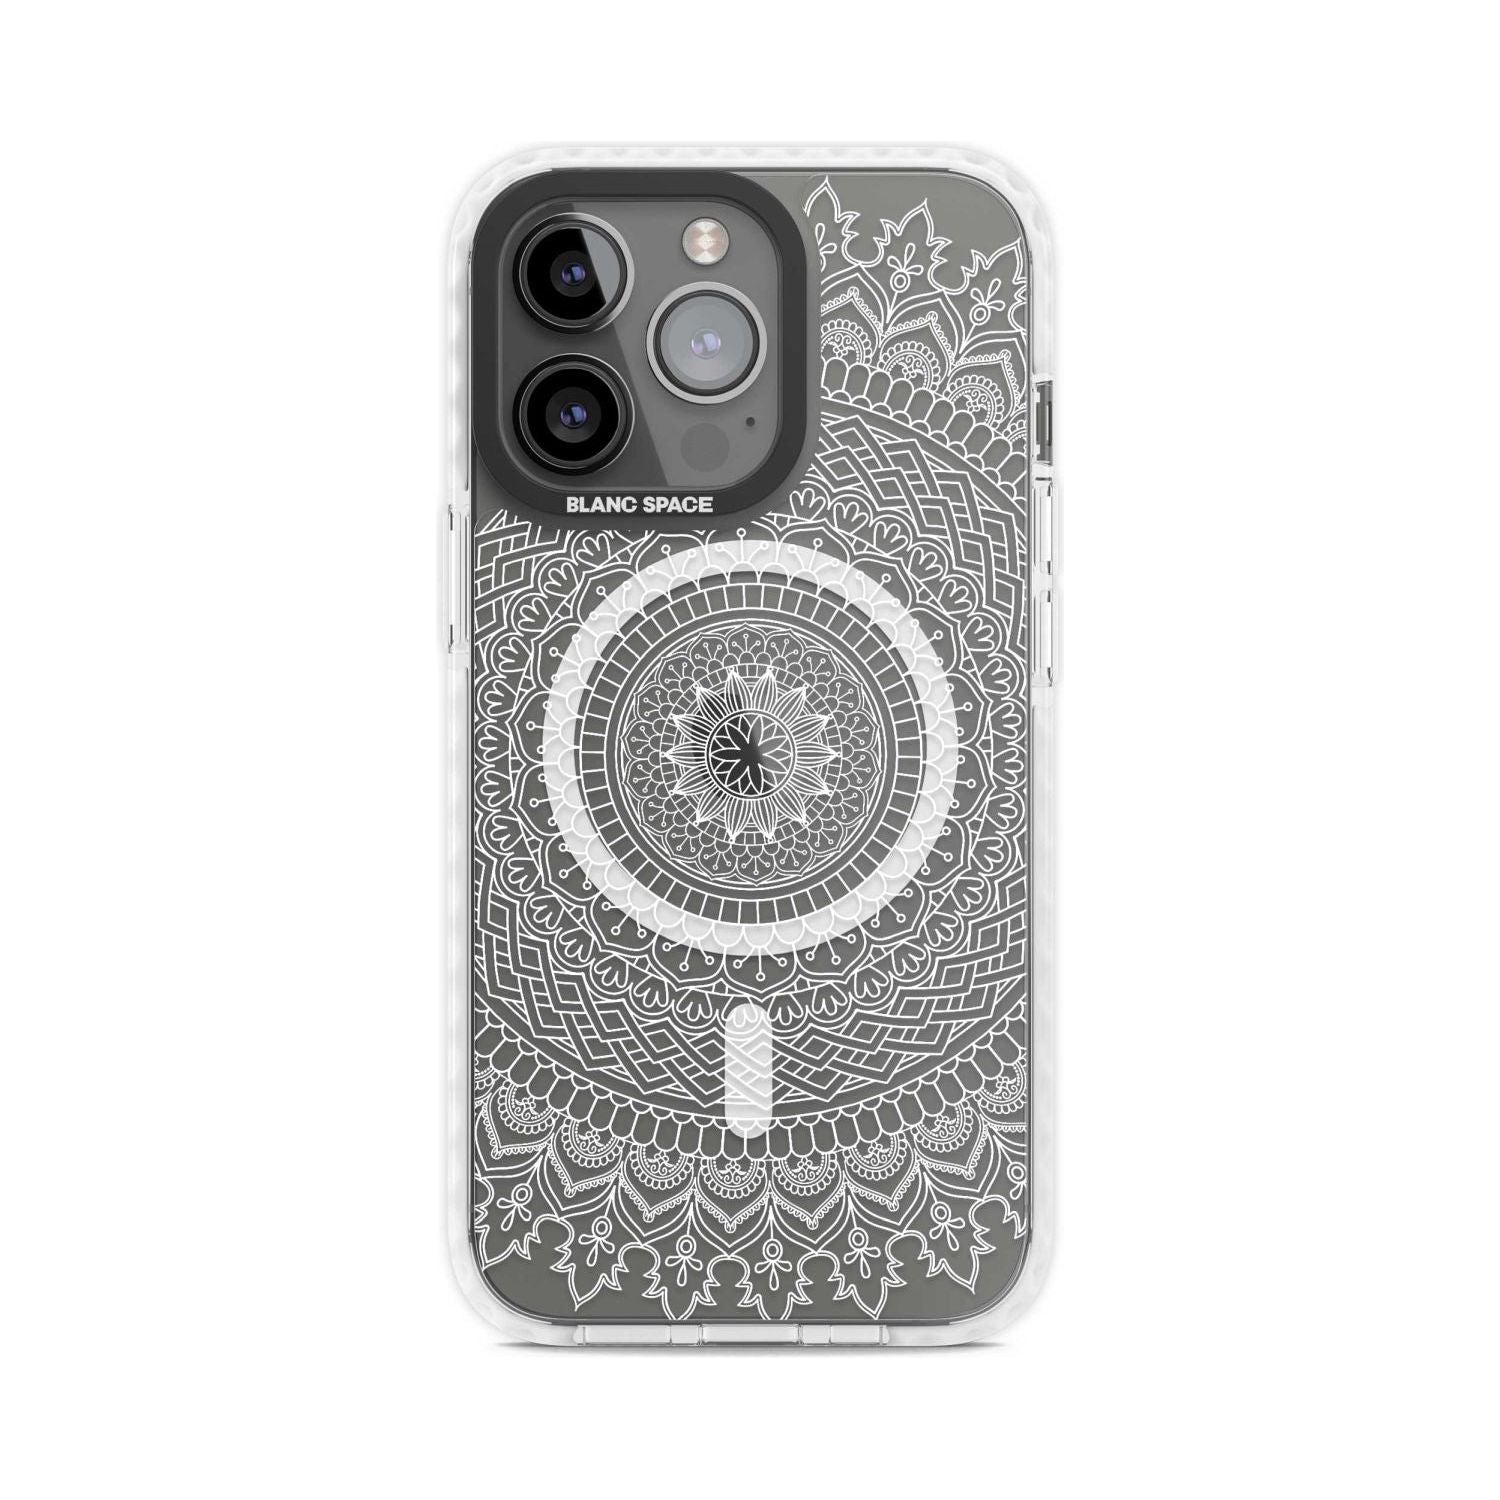 Large White Mandala Design Phone Case iPhone 15 Pro Max / Magsafe Impact Case,iPhone 15 Pro / Magsafe Impact Case Blanc Space